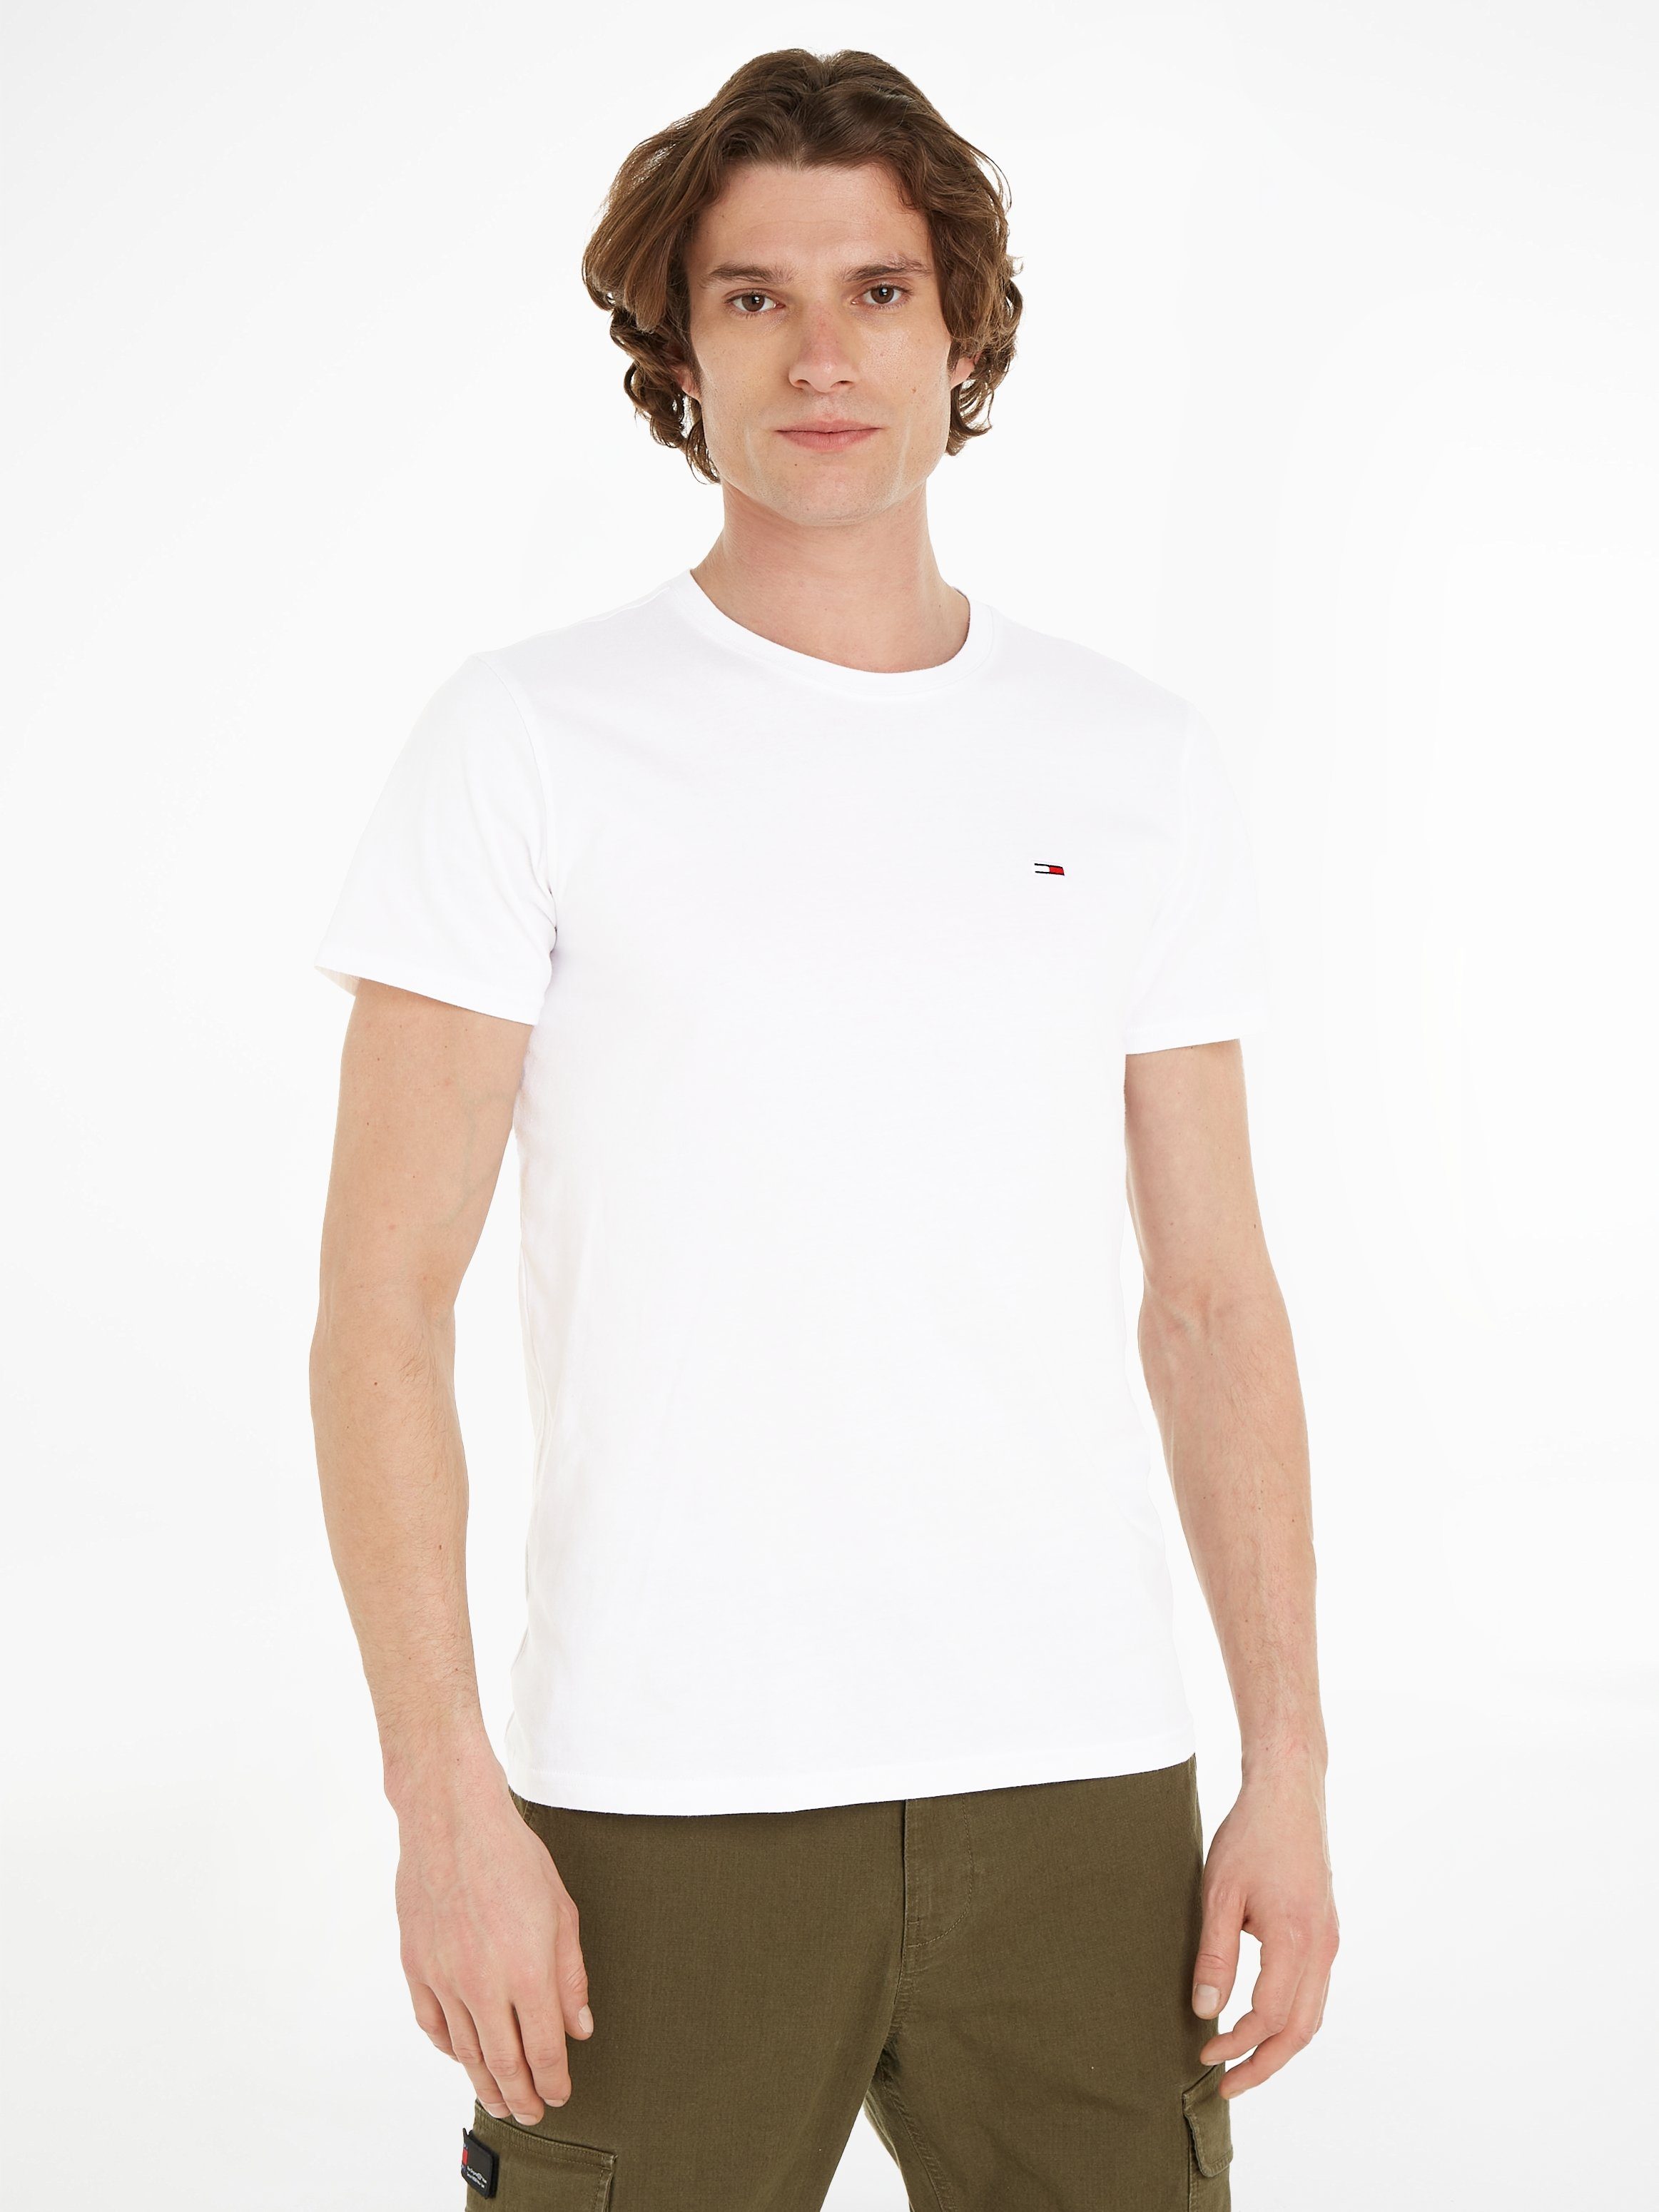 Tommy Jeans T-Shirt der SLIM TEE Markenlogo 2-tlg., Dark Night 2PACK Brust 2er-Pack) TJM mit JERSEY auf (Packung, Navy/Weiß